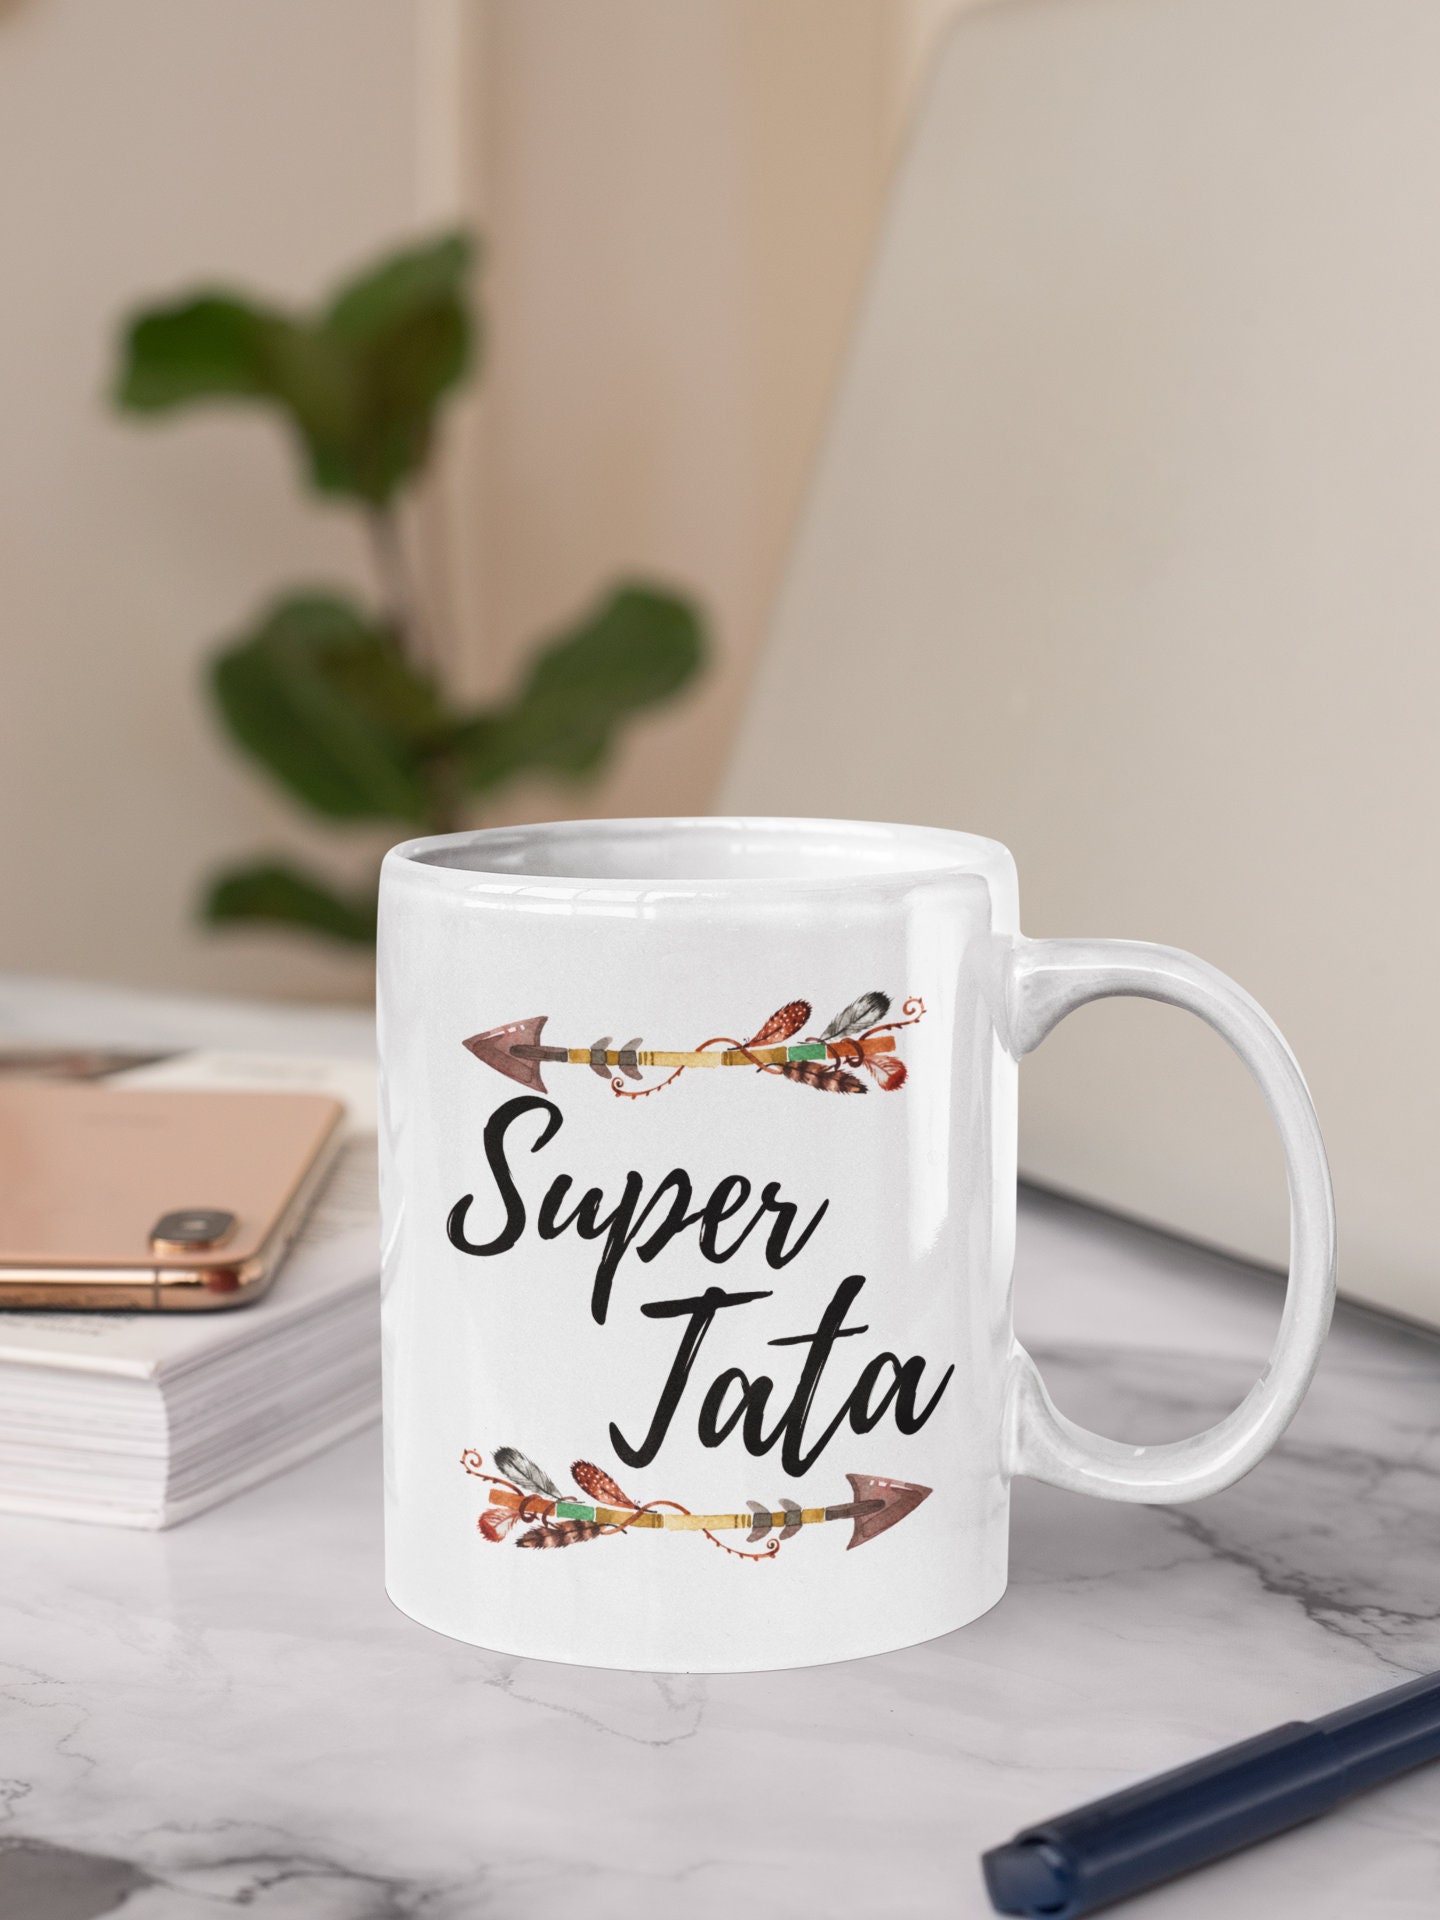 Super Tata Mug / Tata Mug / Tata Gift / Gift for Tata / Tata Coffee Mug /  Tata Present 